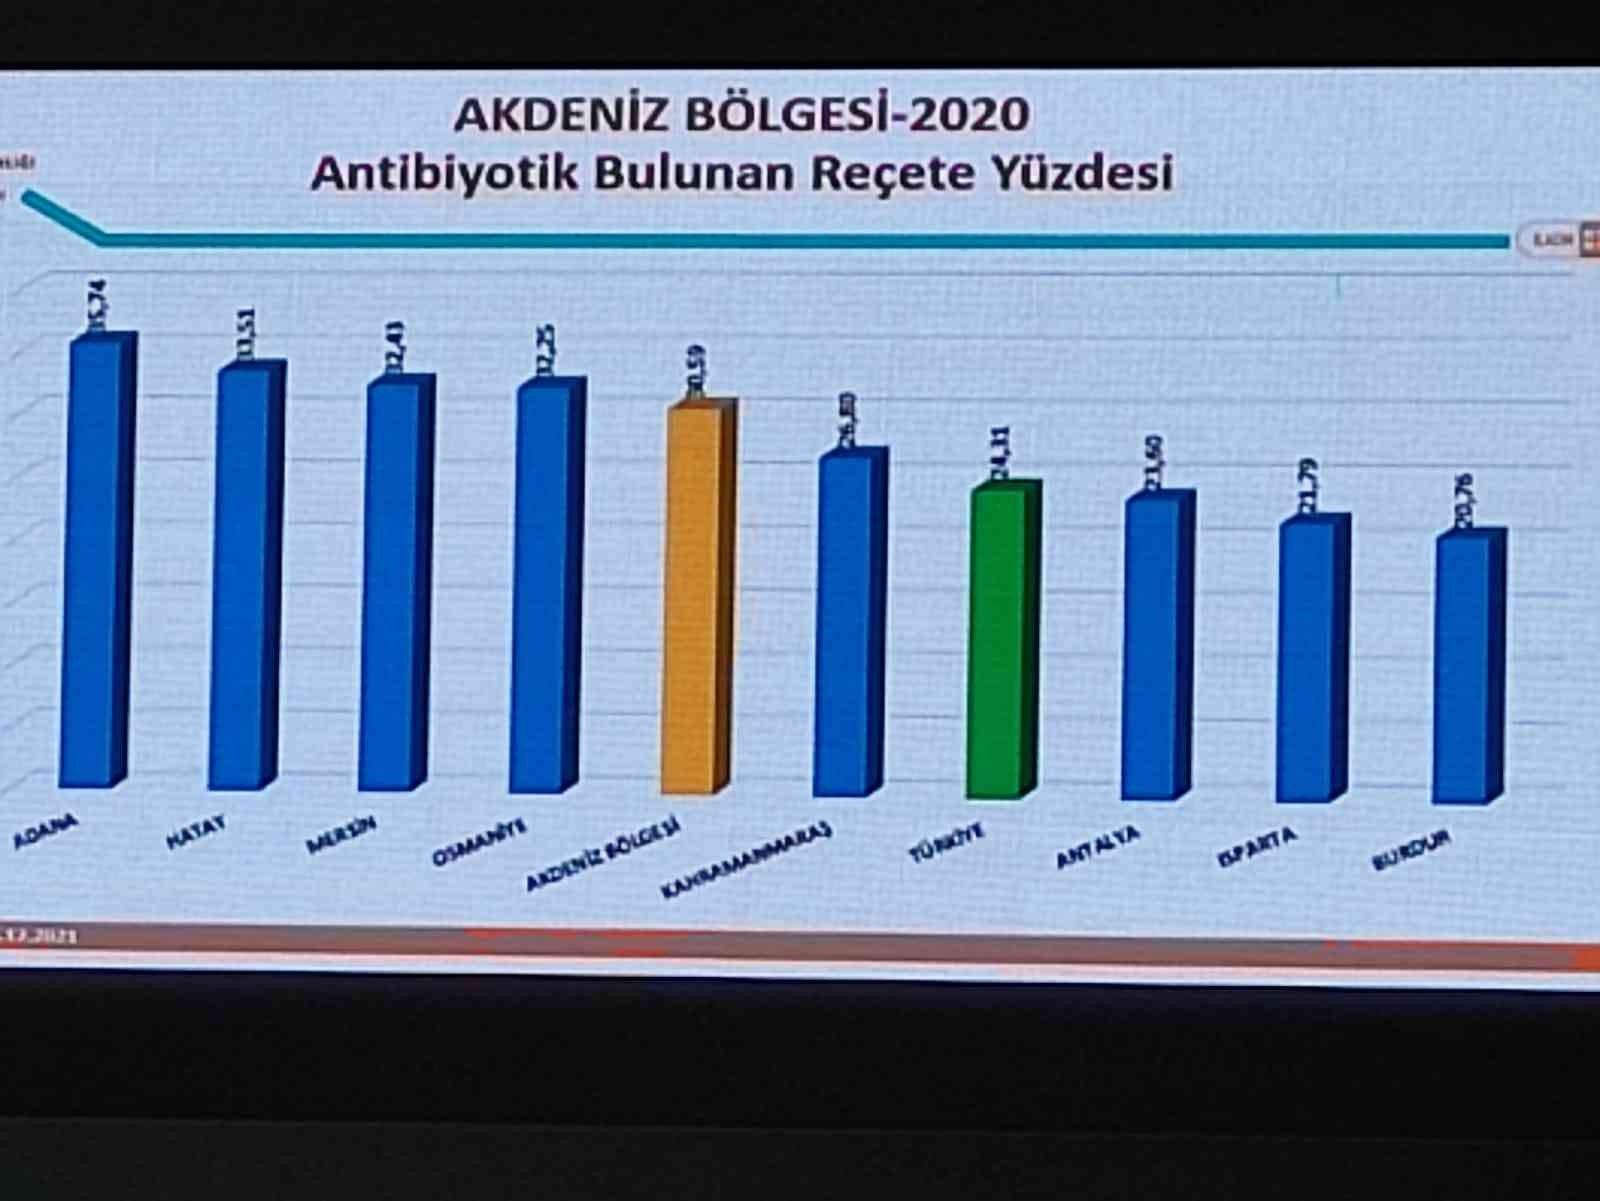 Akdeniz Bölgesi’nde en az antibiyotik kullanan il Burdur #burdur